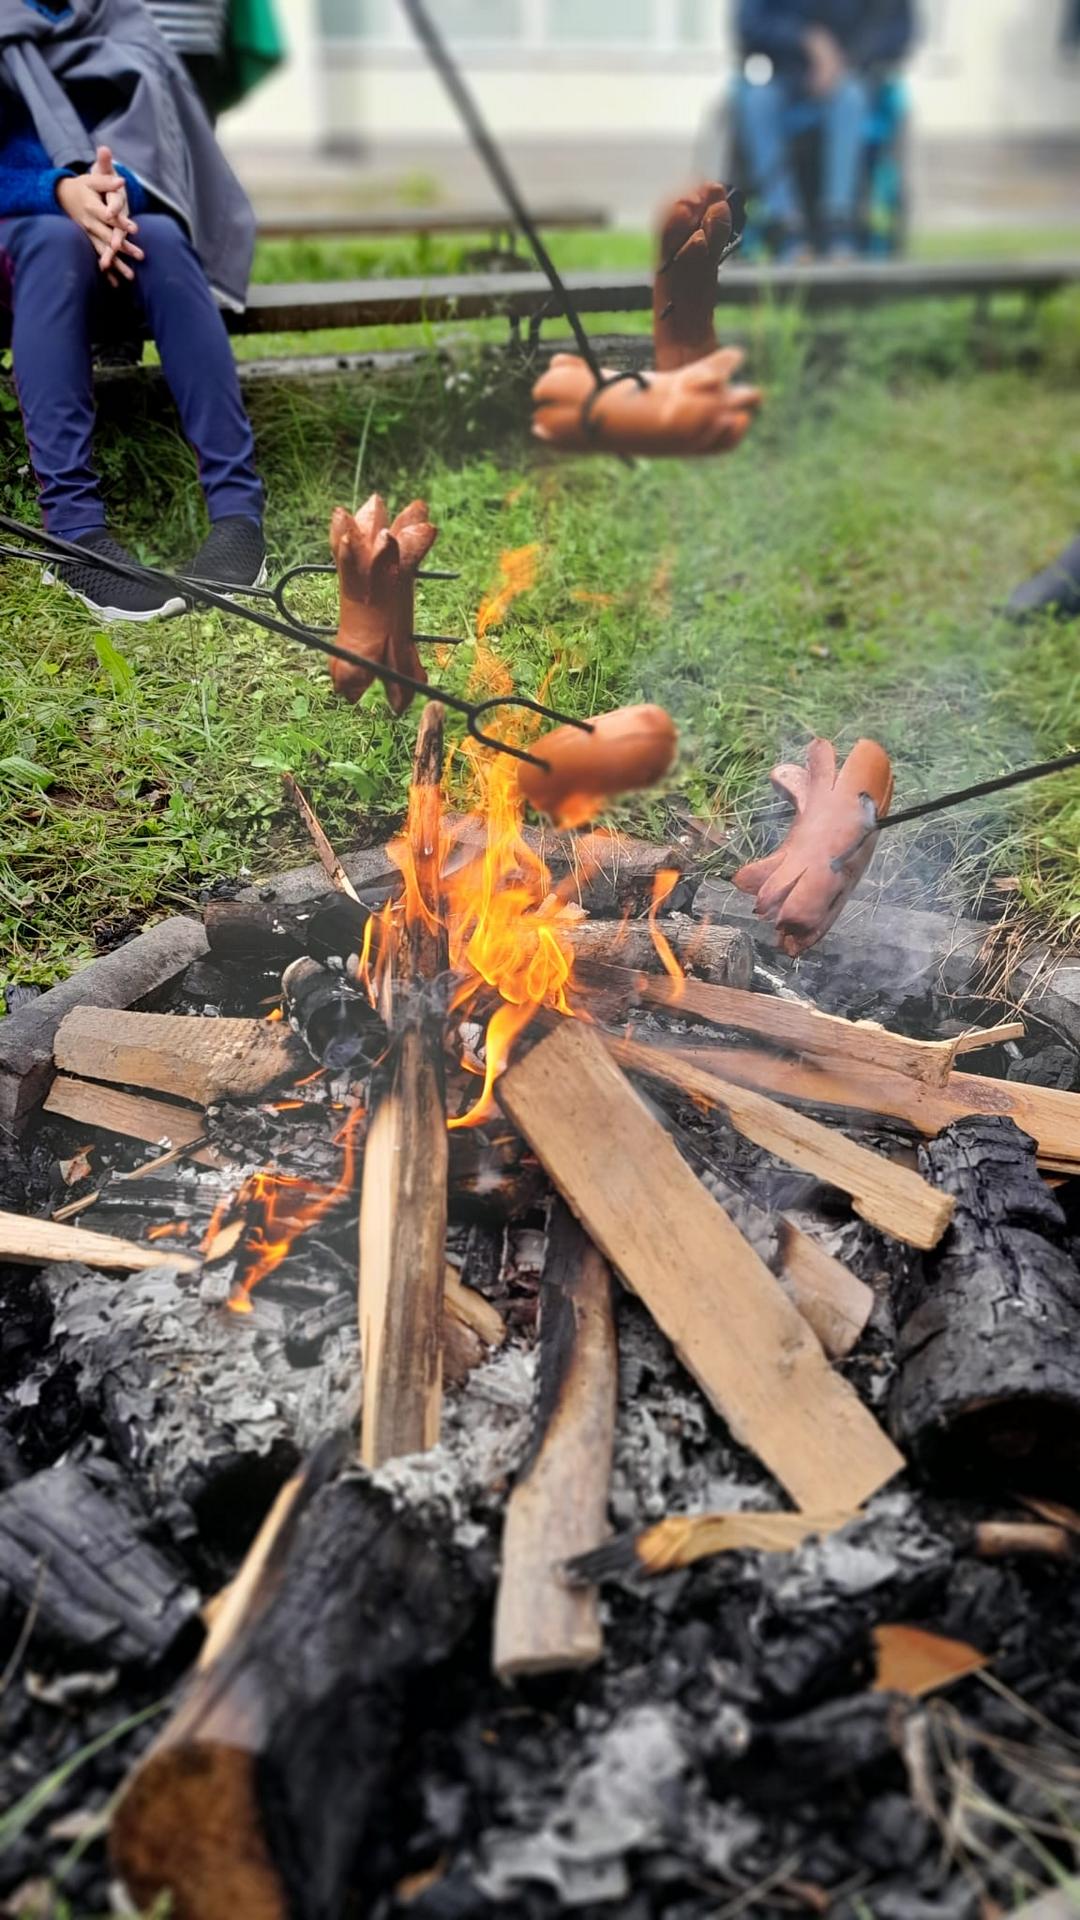 špekáčky opékající se nad ohněm